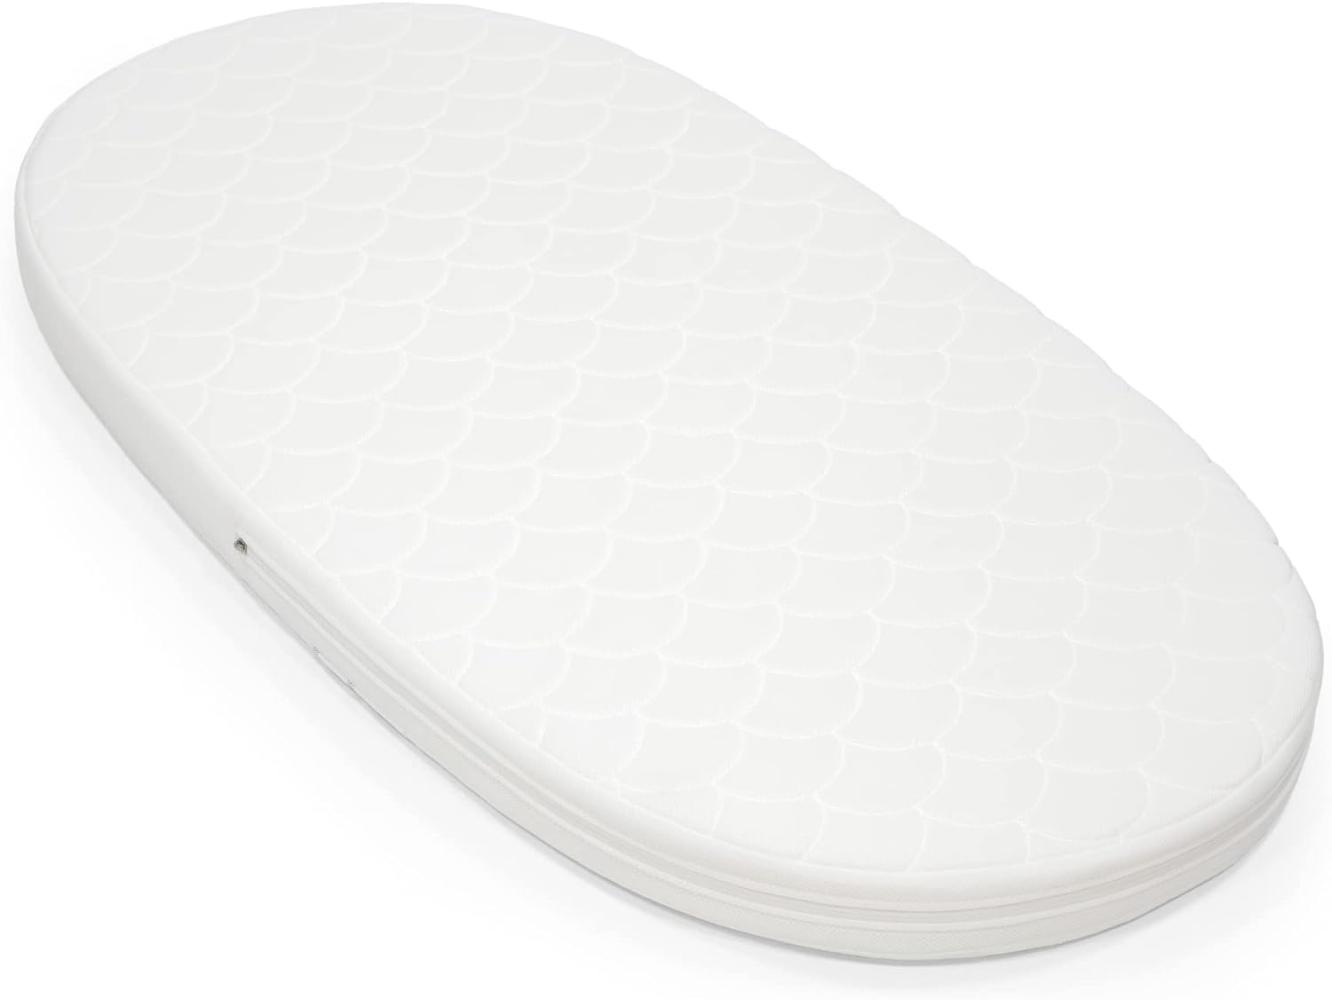 Stokke® Sleepi™ V3 Bett Matratze 70 x 140 cm Weiß Bild 1